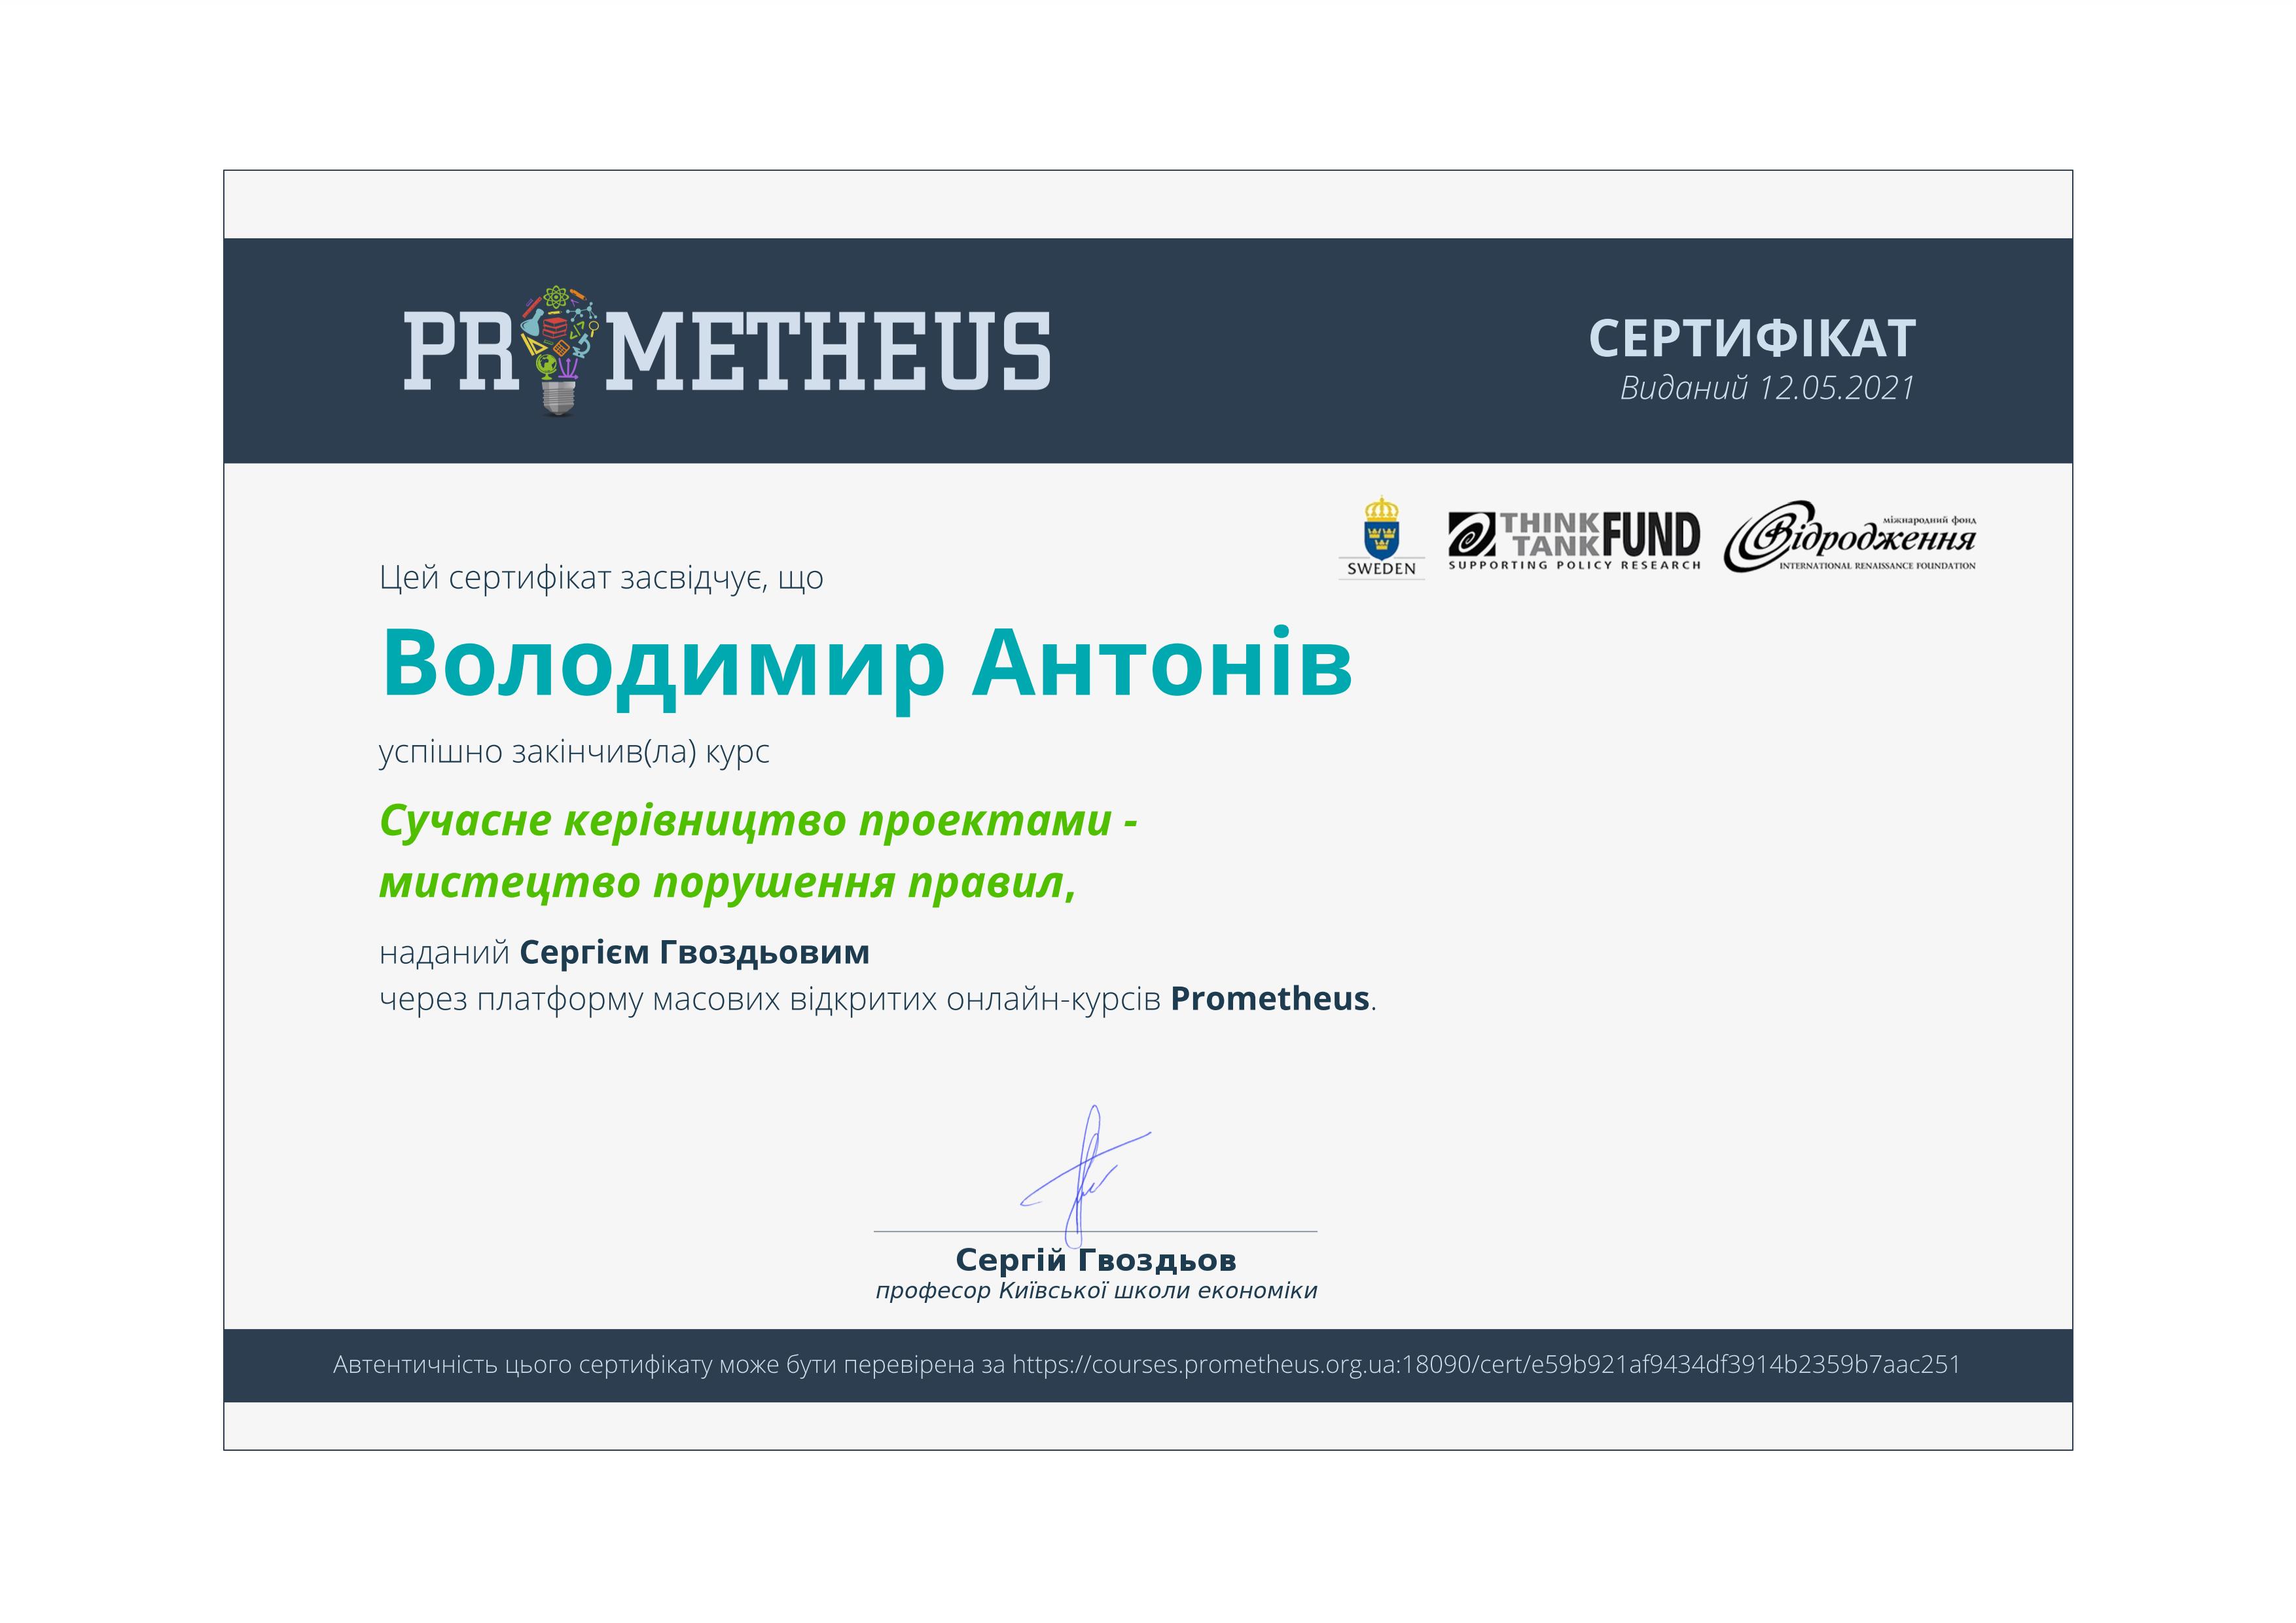 Certificate A 01